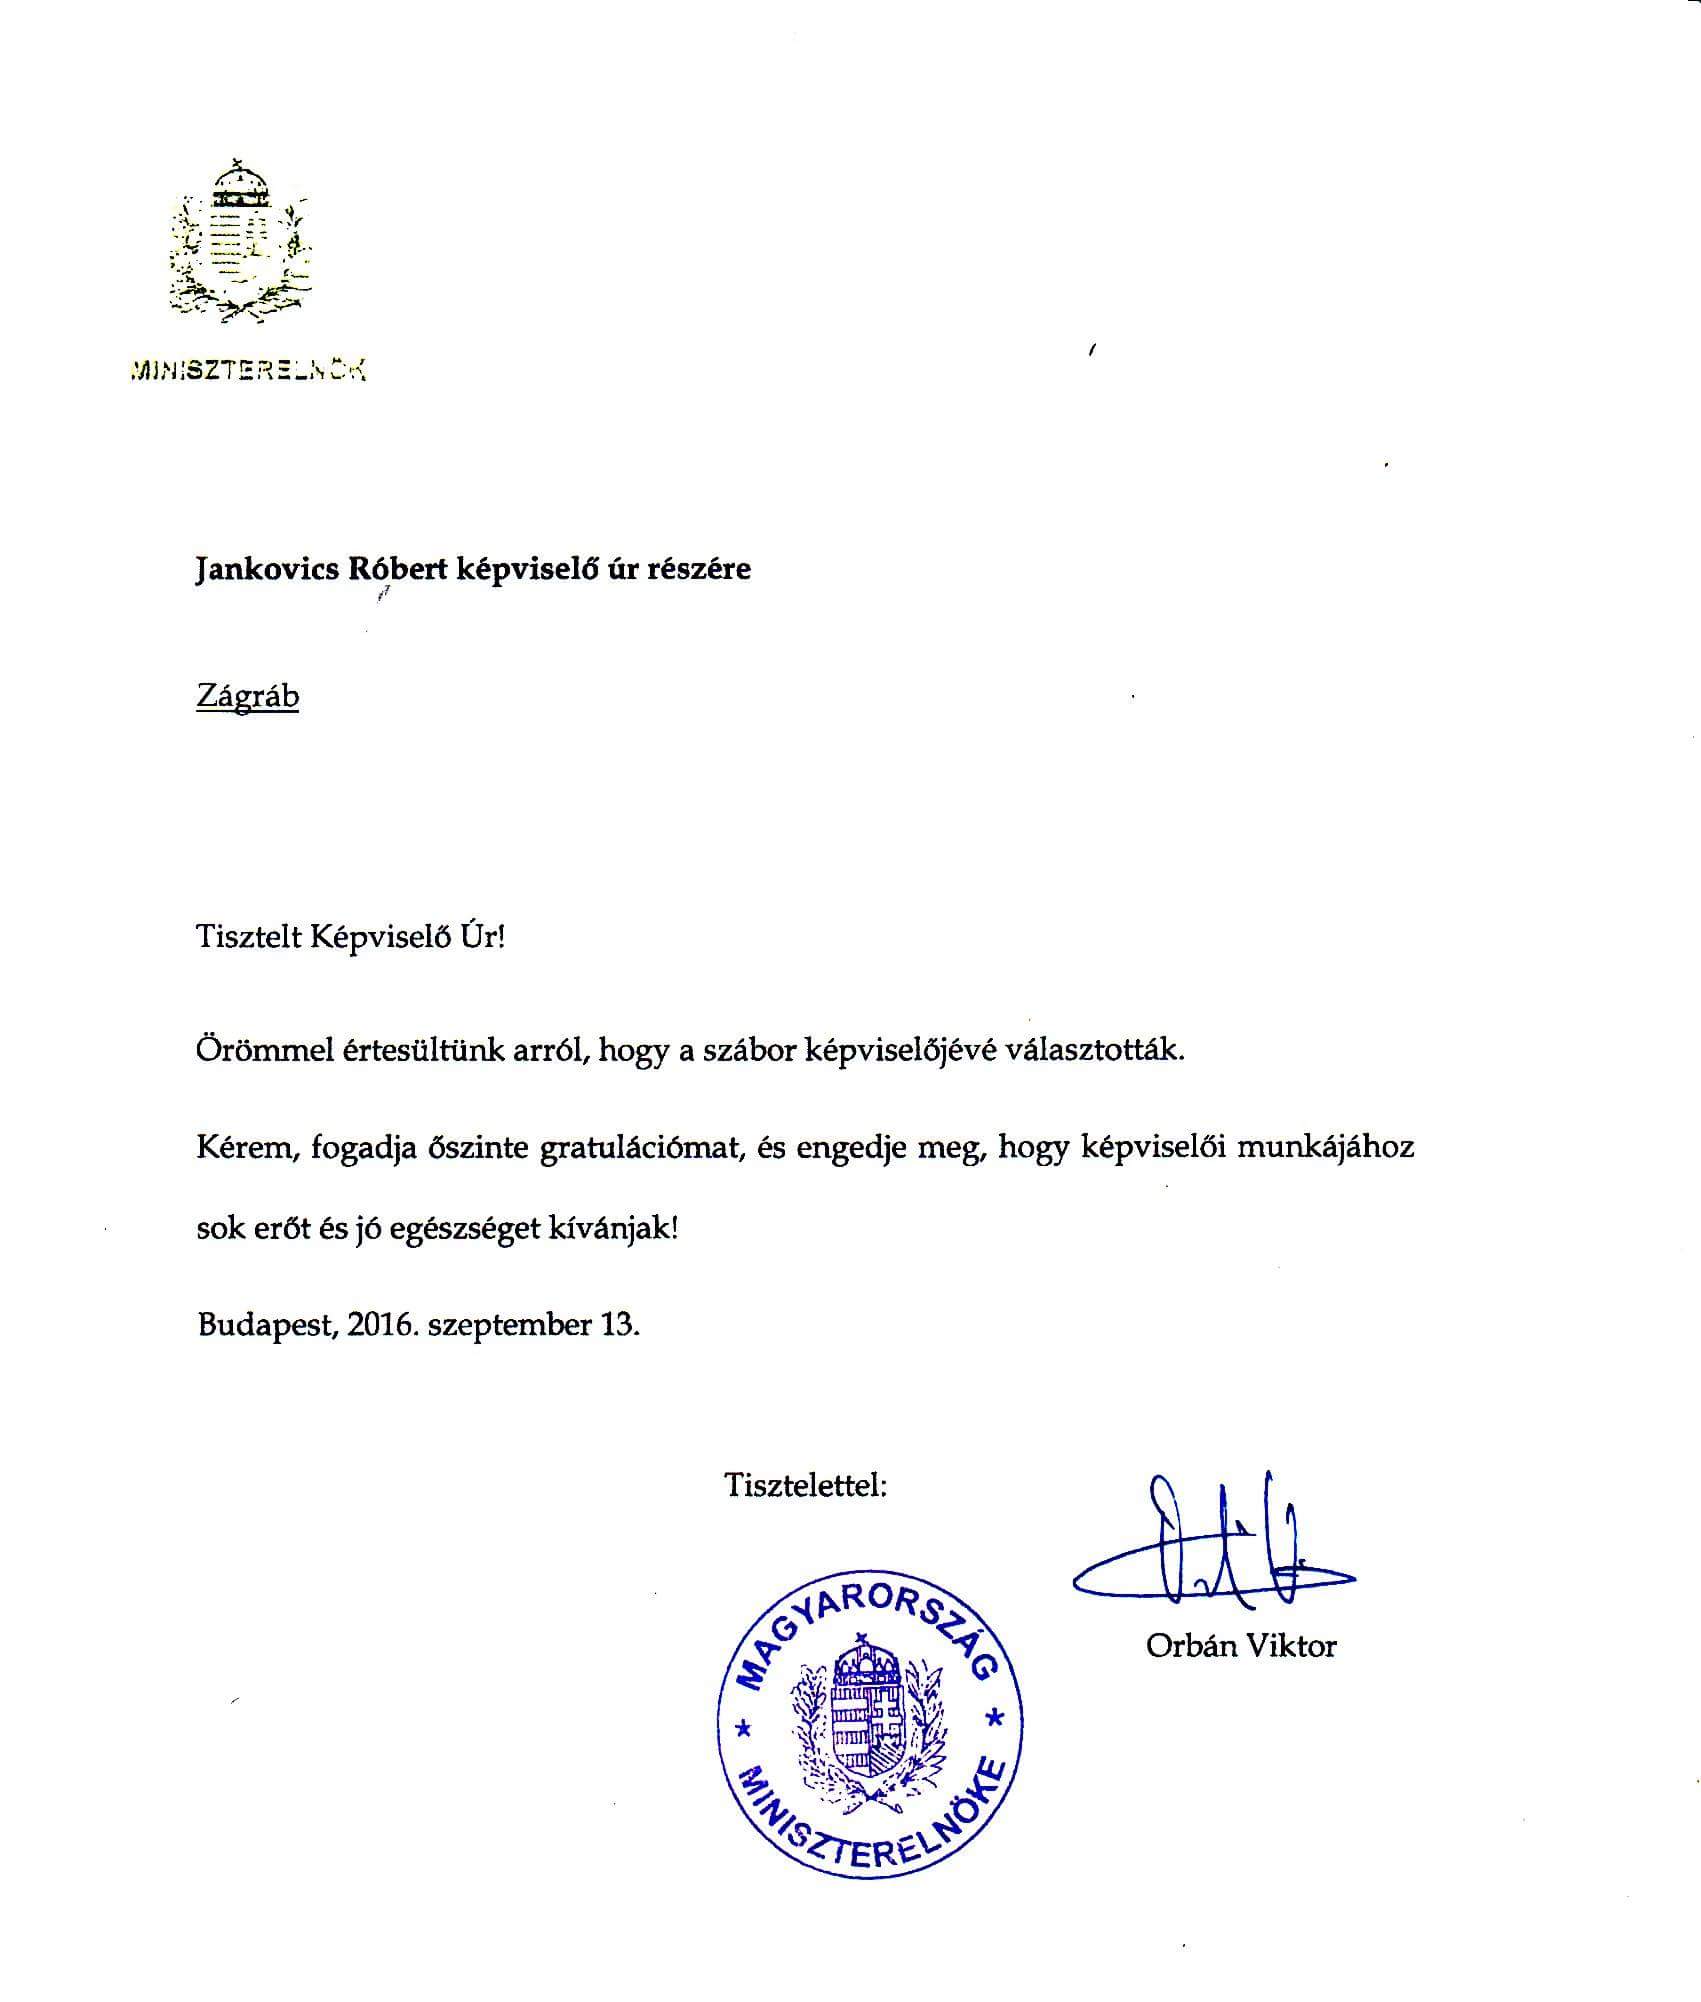 Službena čestitka koju je Orban poslao Jankovicsu nakon što je izabran u Sabor